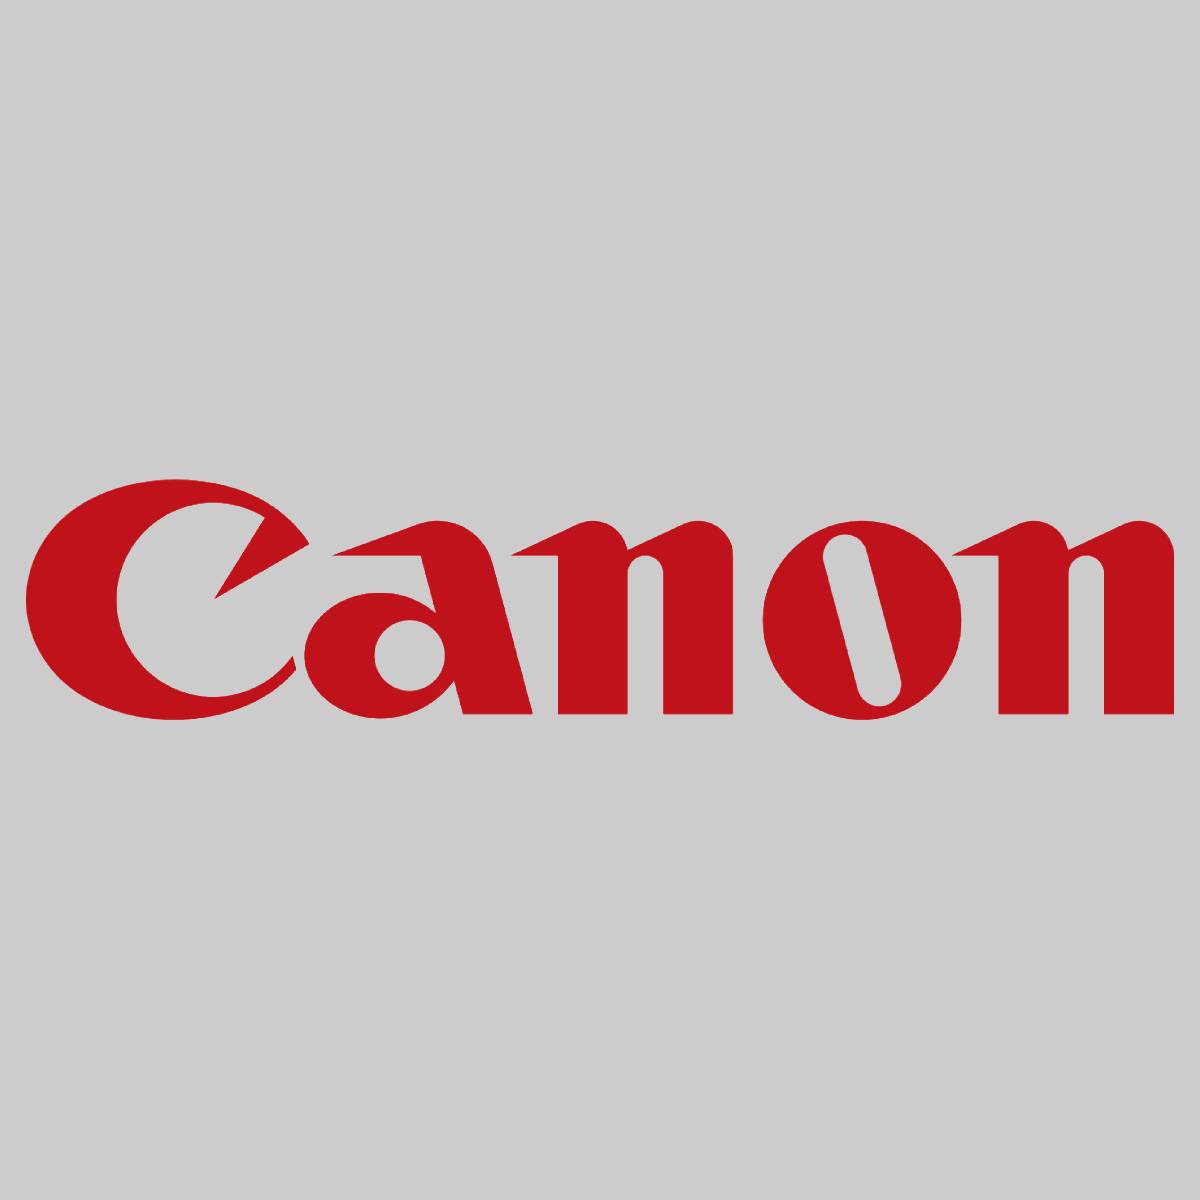 "Original Canon Etching Grid Plate FC8-2295-000 für iR Adv C7055 C7065 C9065 C90